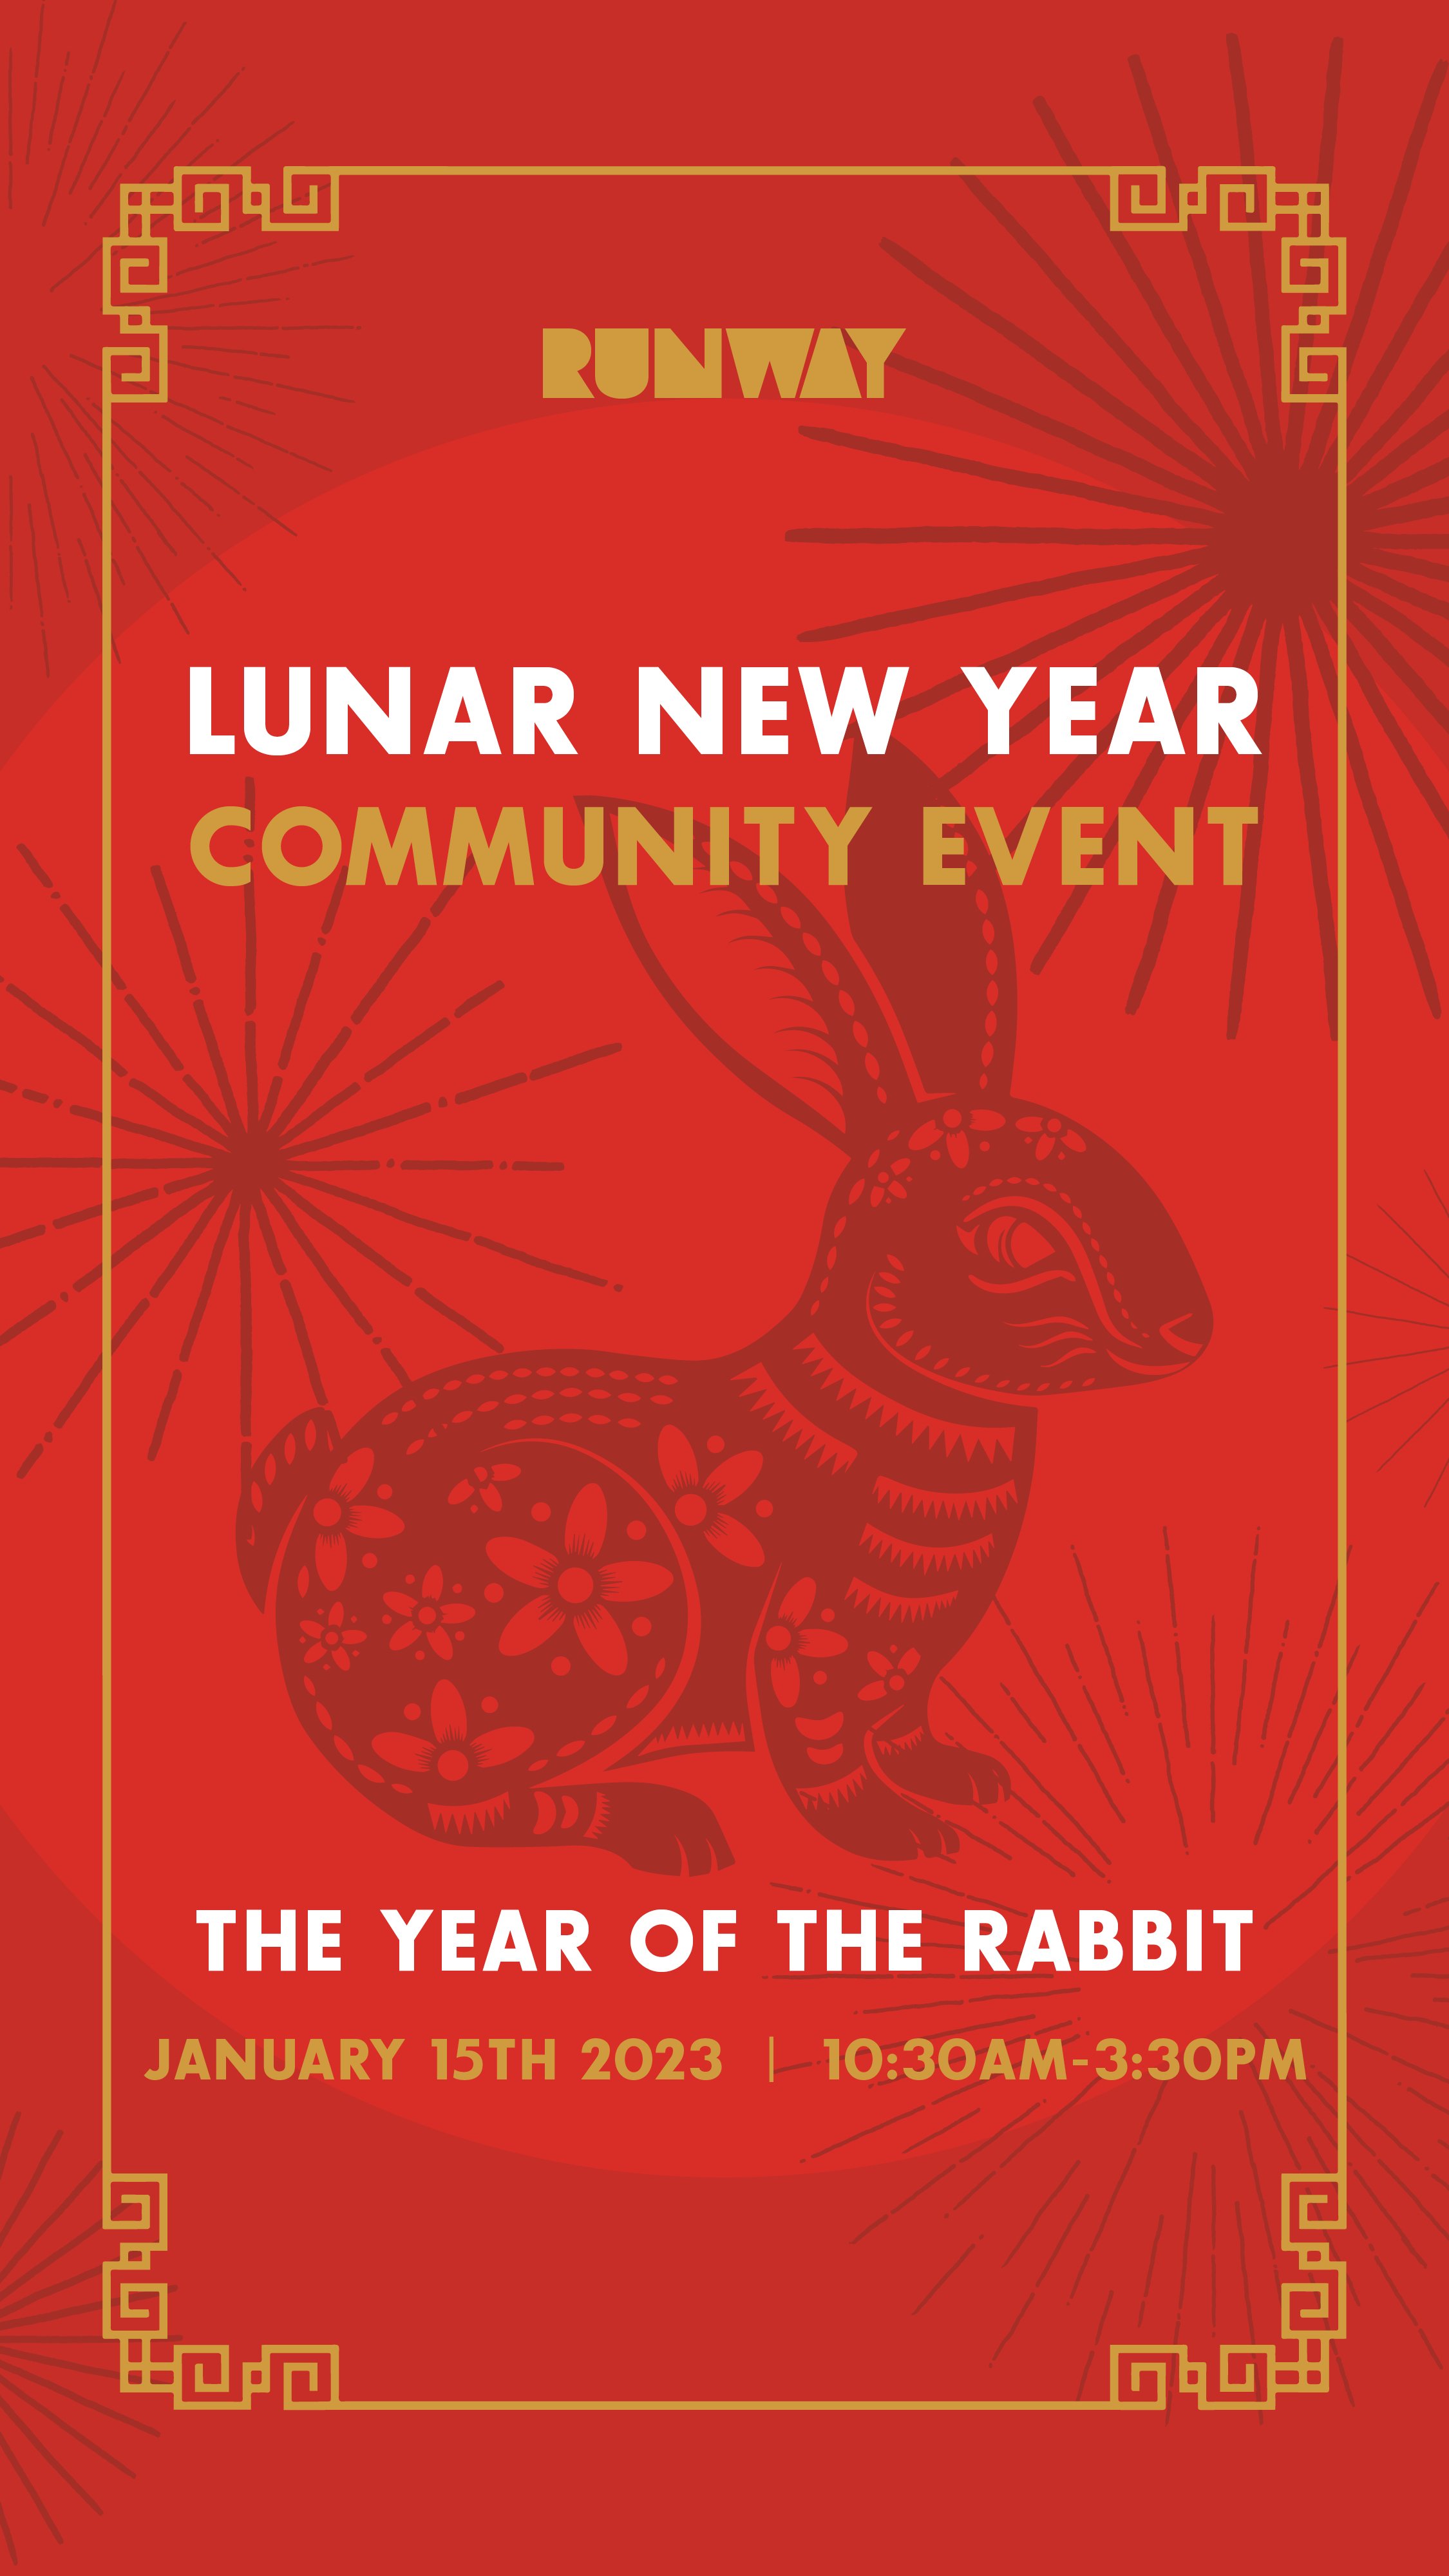 Lunar New Year Community Event — RUNWAY